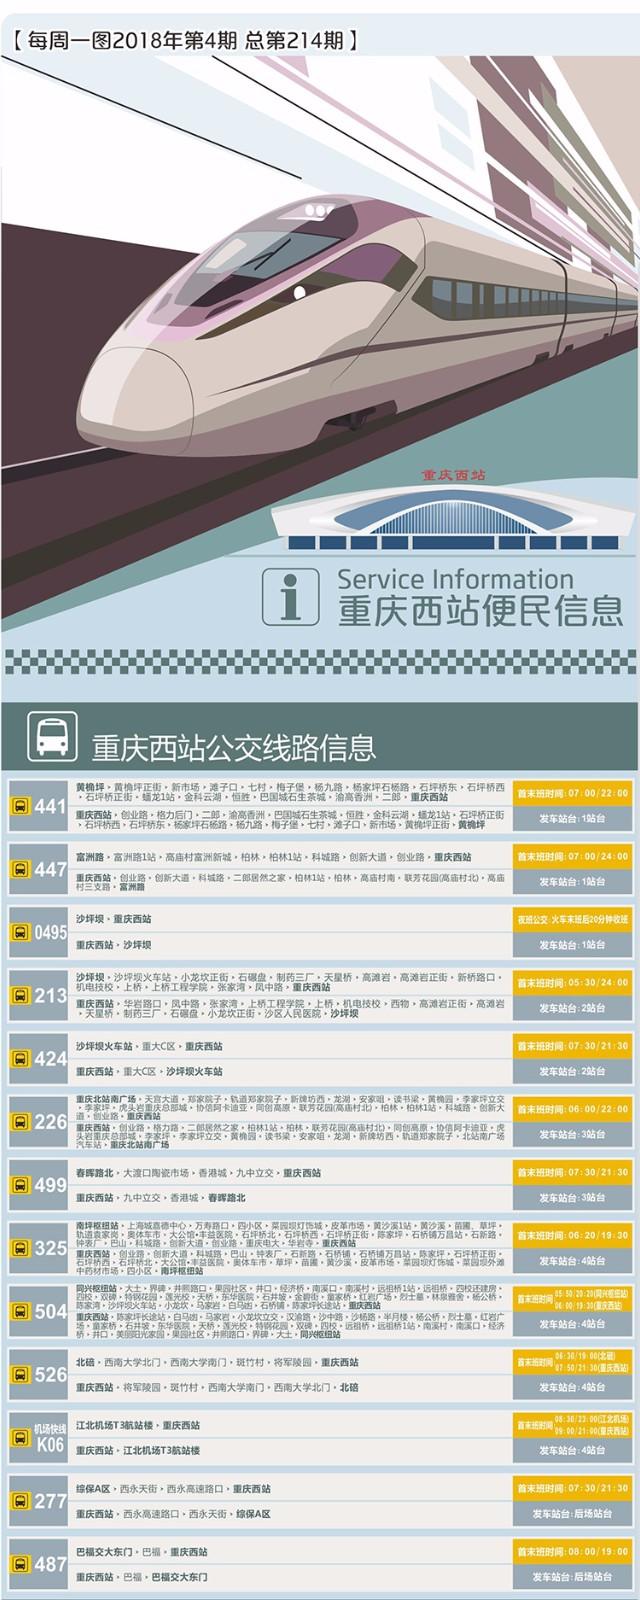 重庆西火车站咨询电话是多少